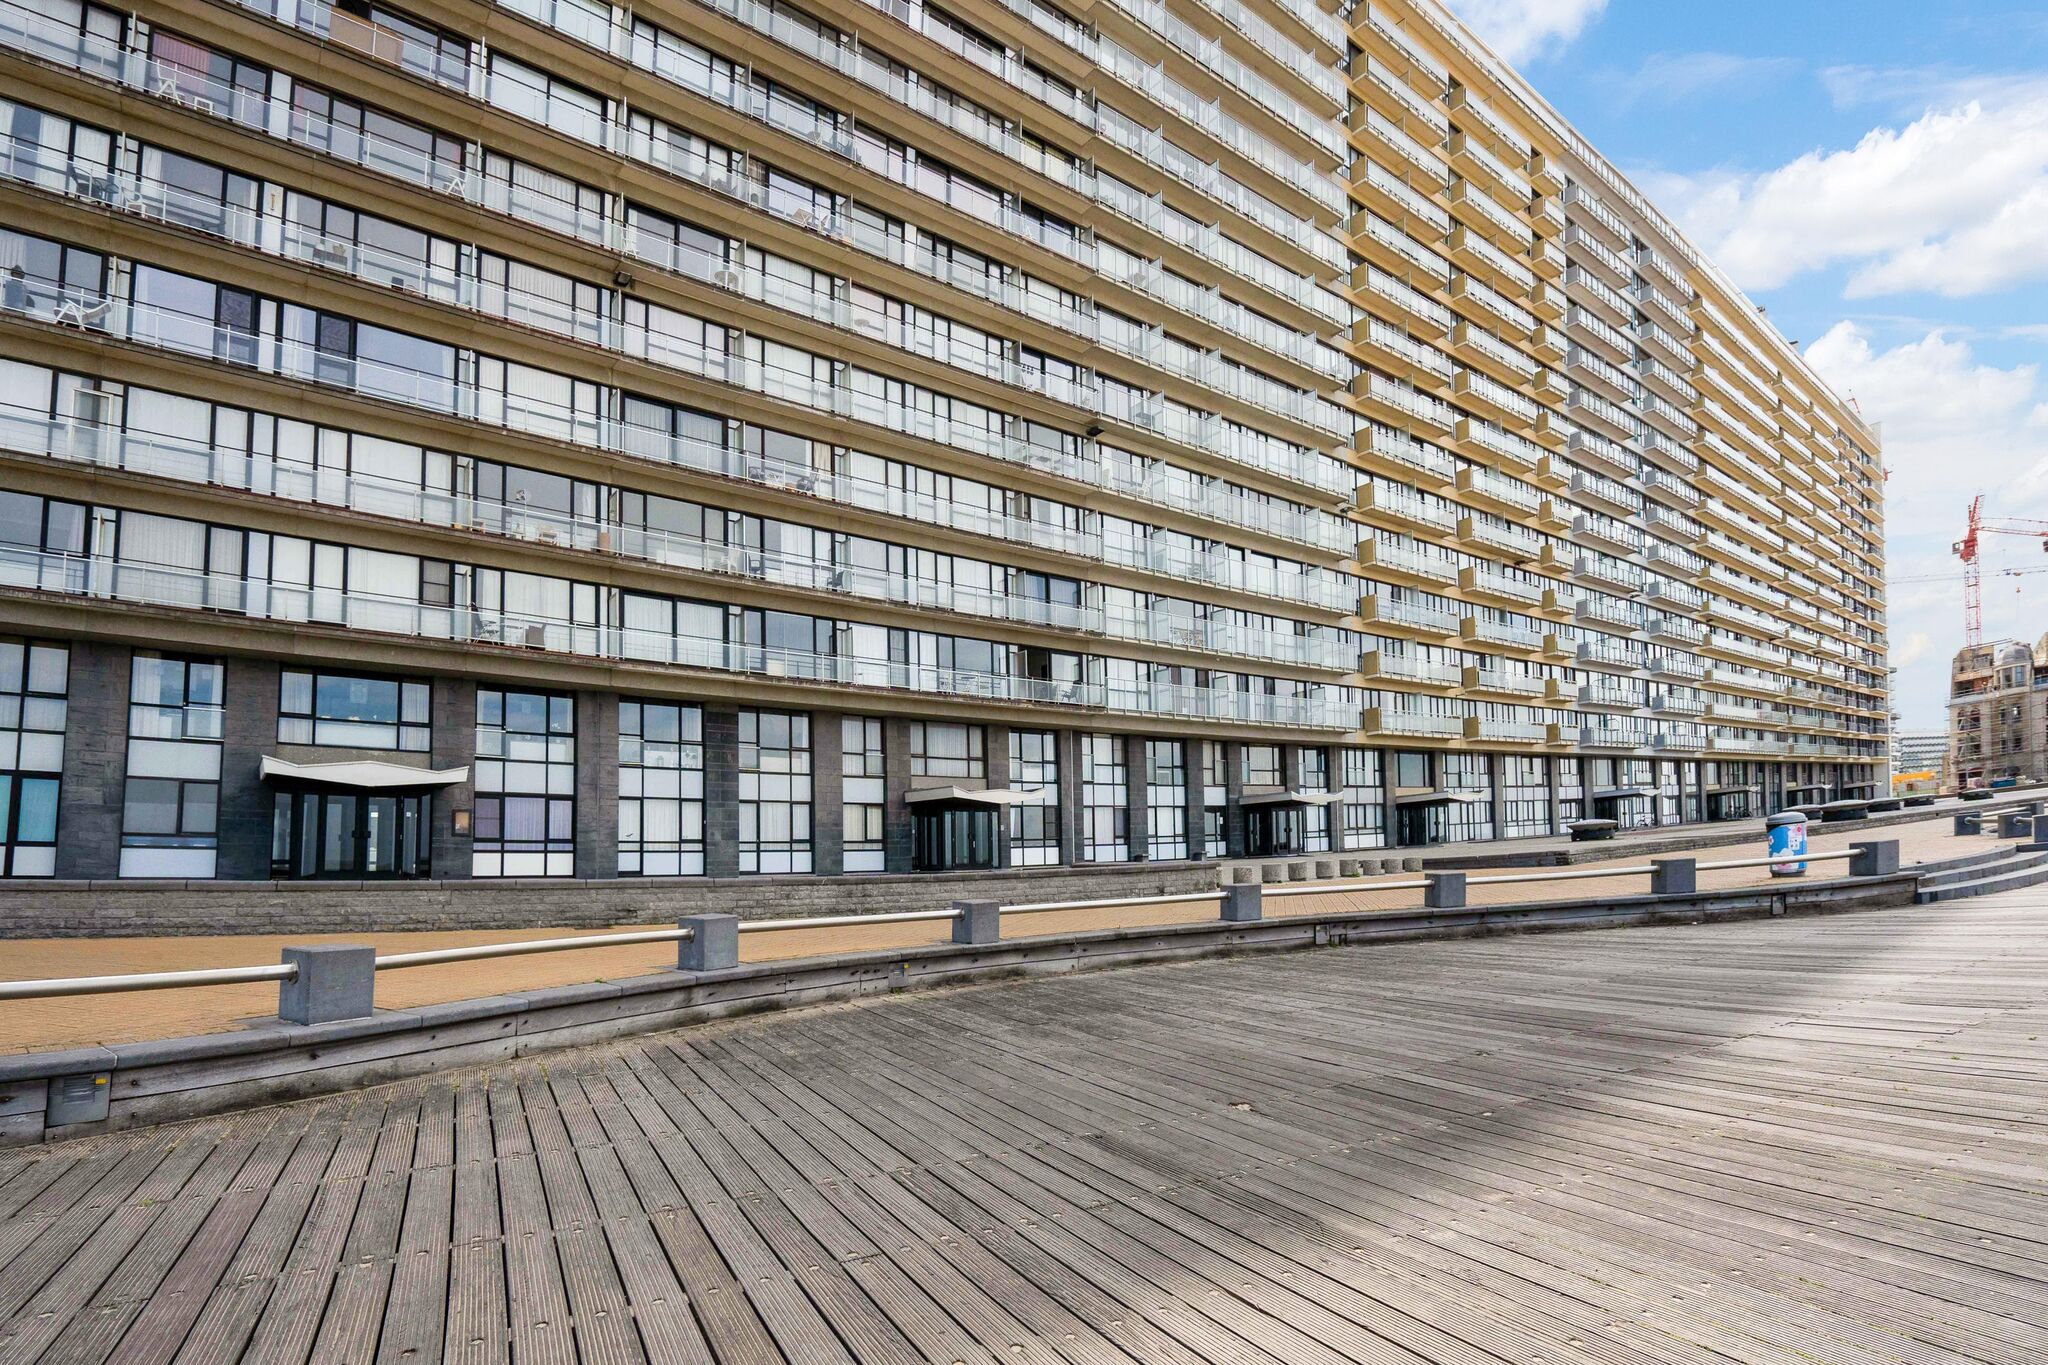 Appartement confortable avec vue sur la mer à Ostende